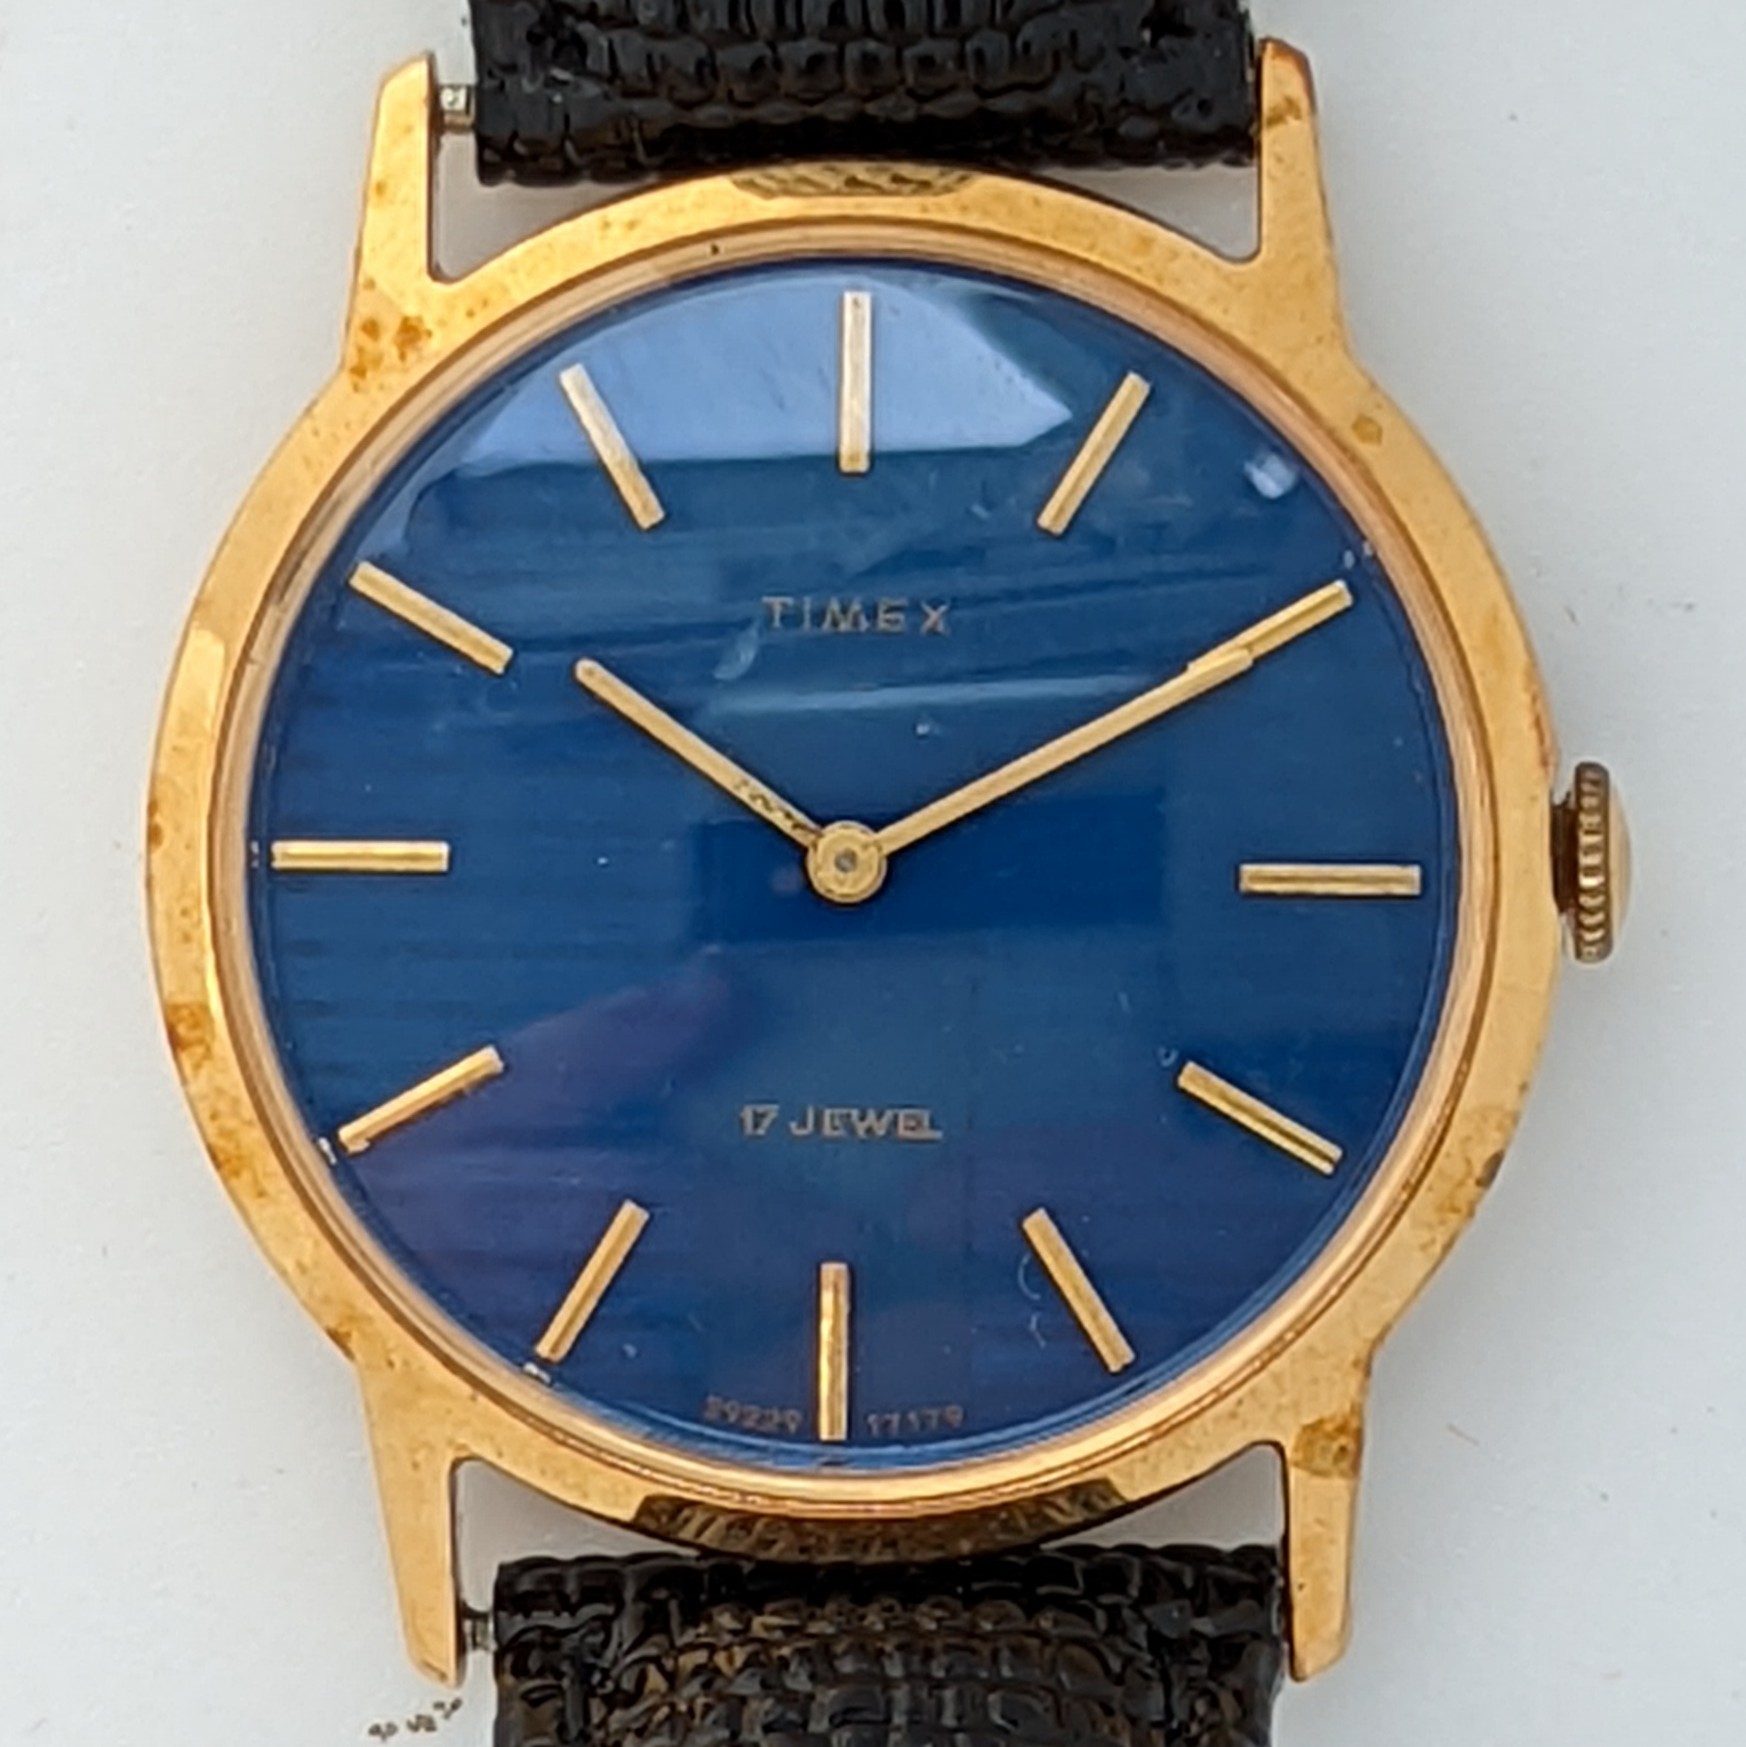 Timex 17 Jewels 1979 Ref. 29221 18179